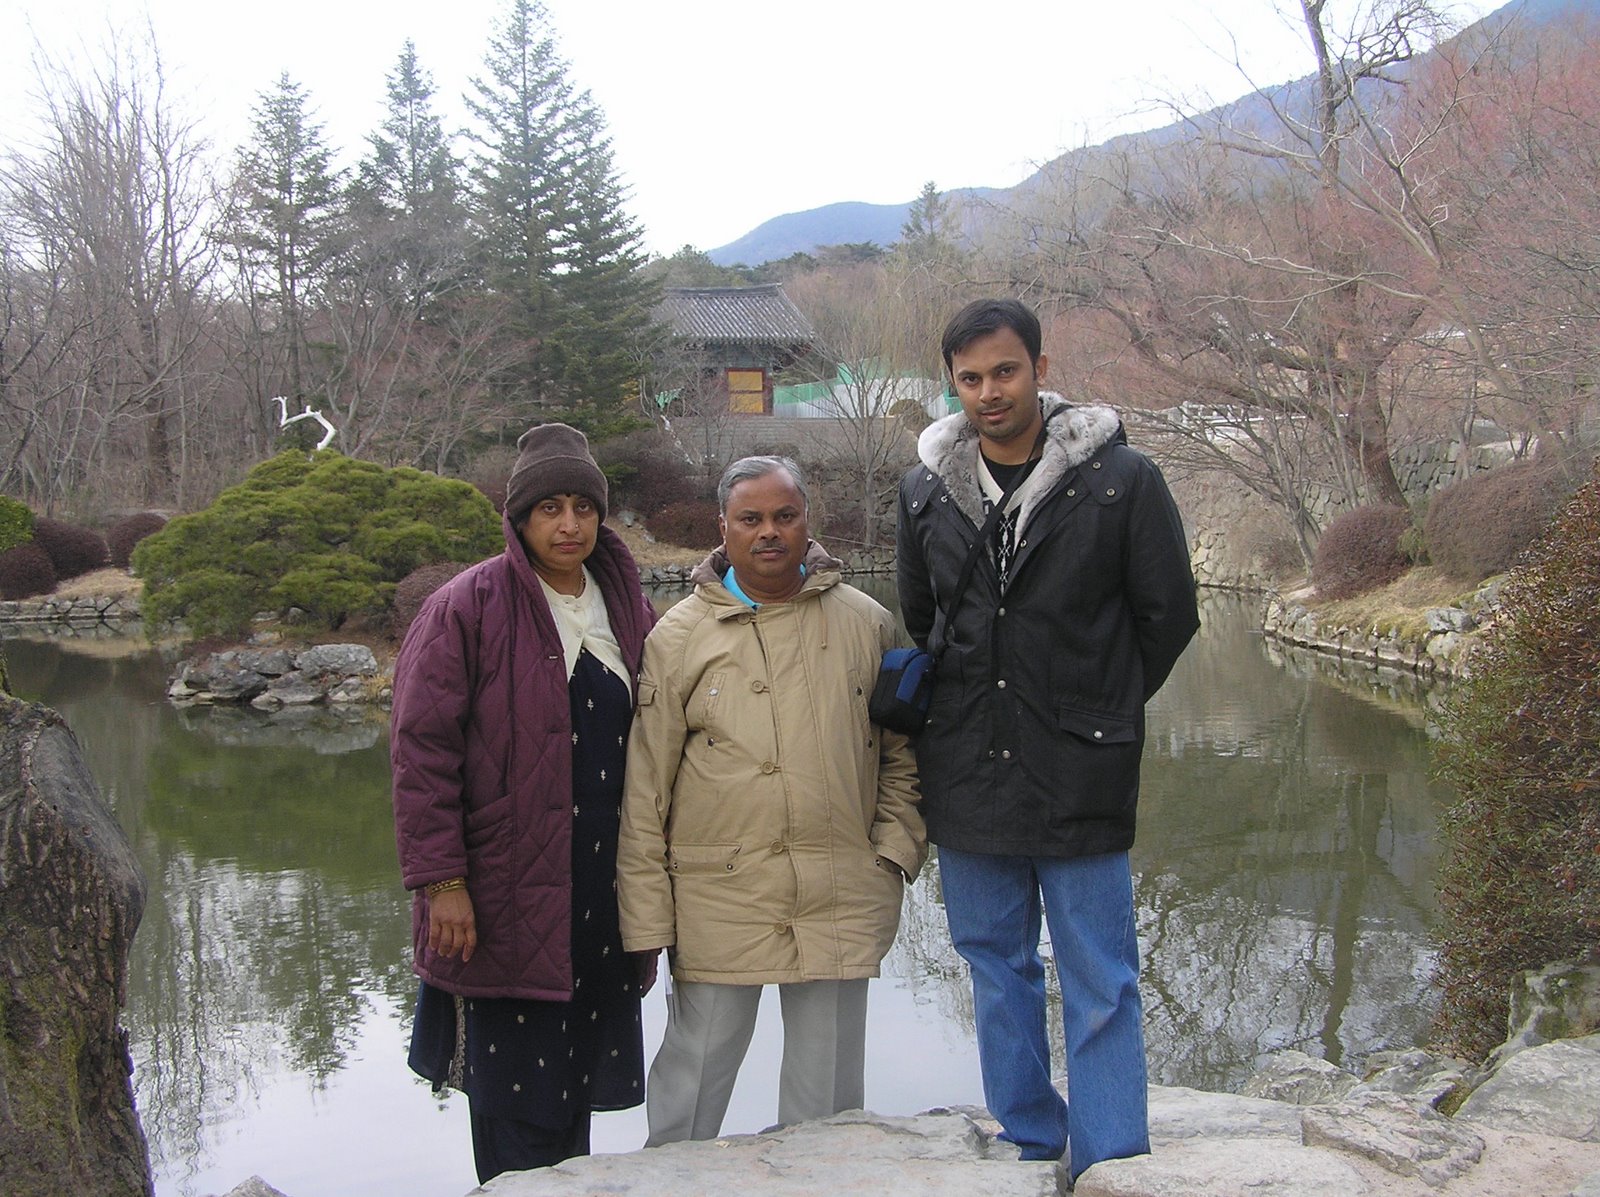 2007년 한국에서 석사를 준비 중 일때 방문한 부모님과 경복궁에서